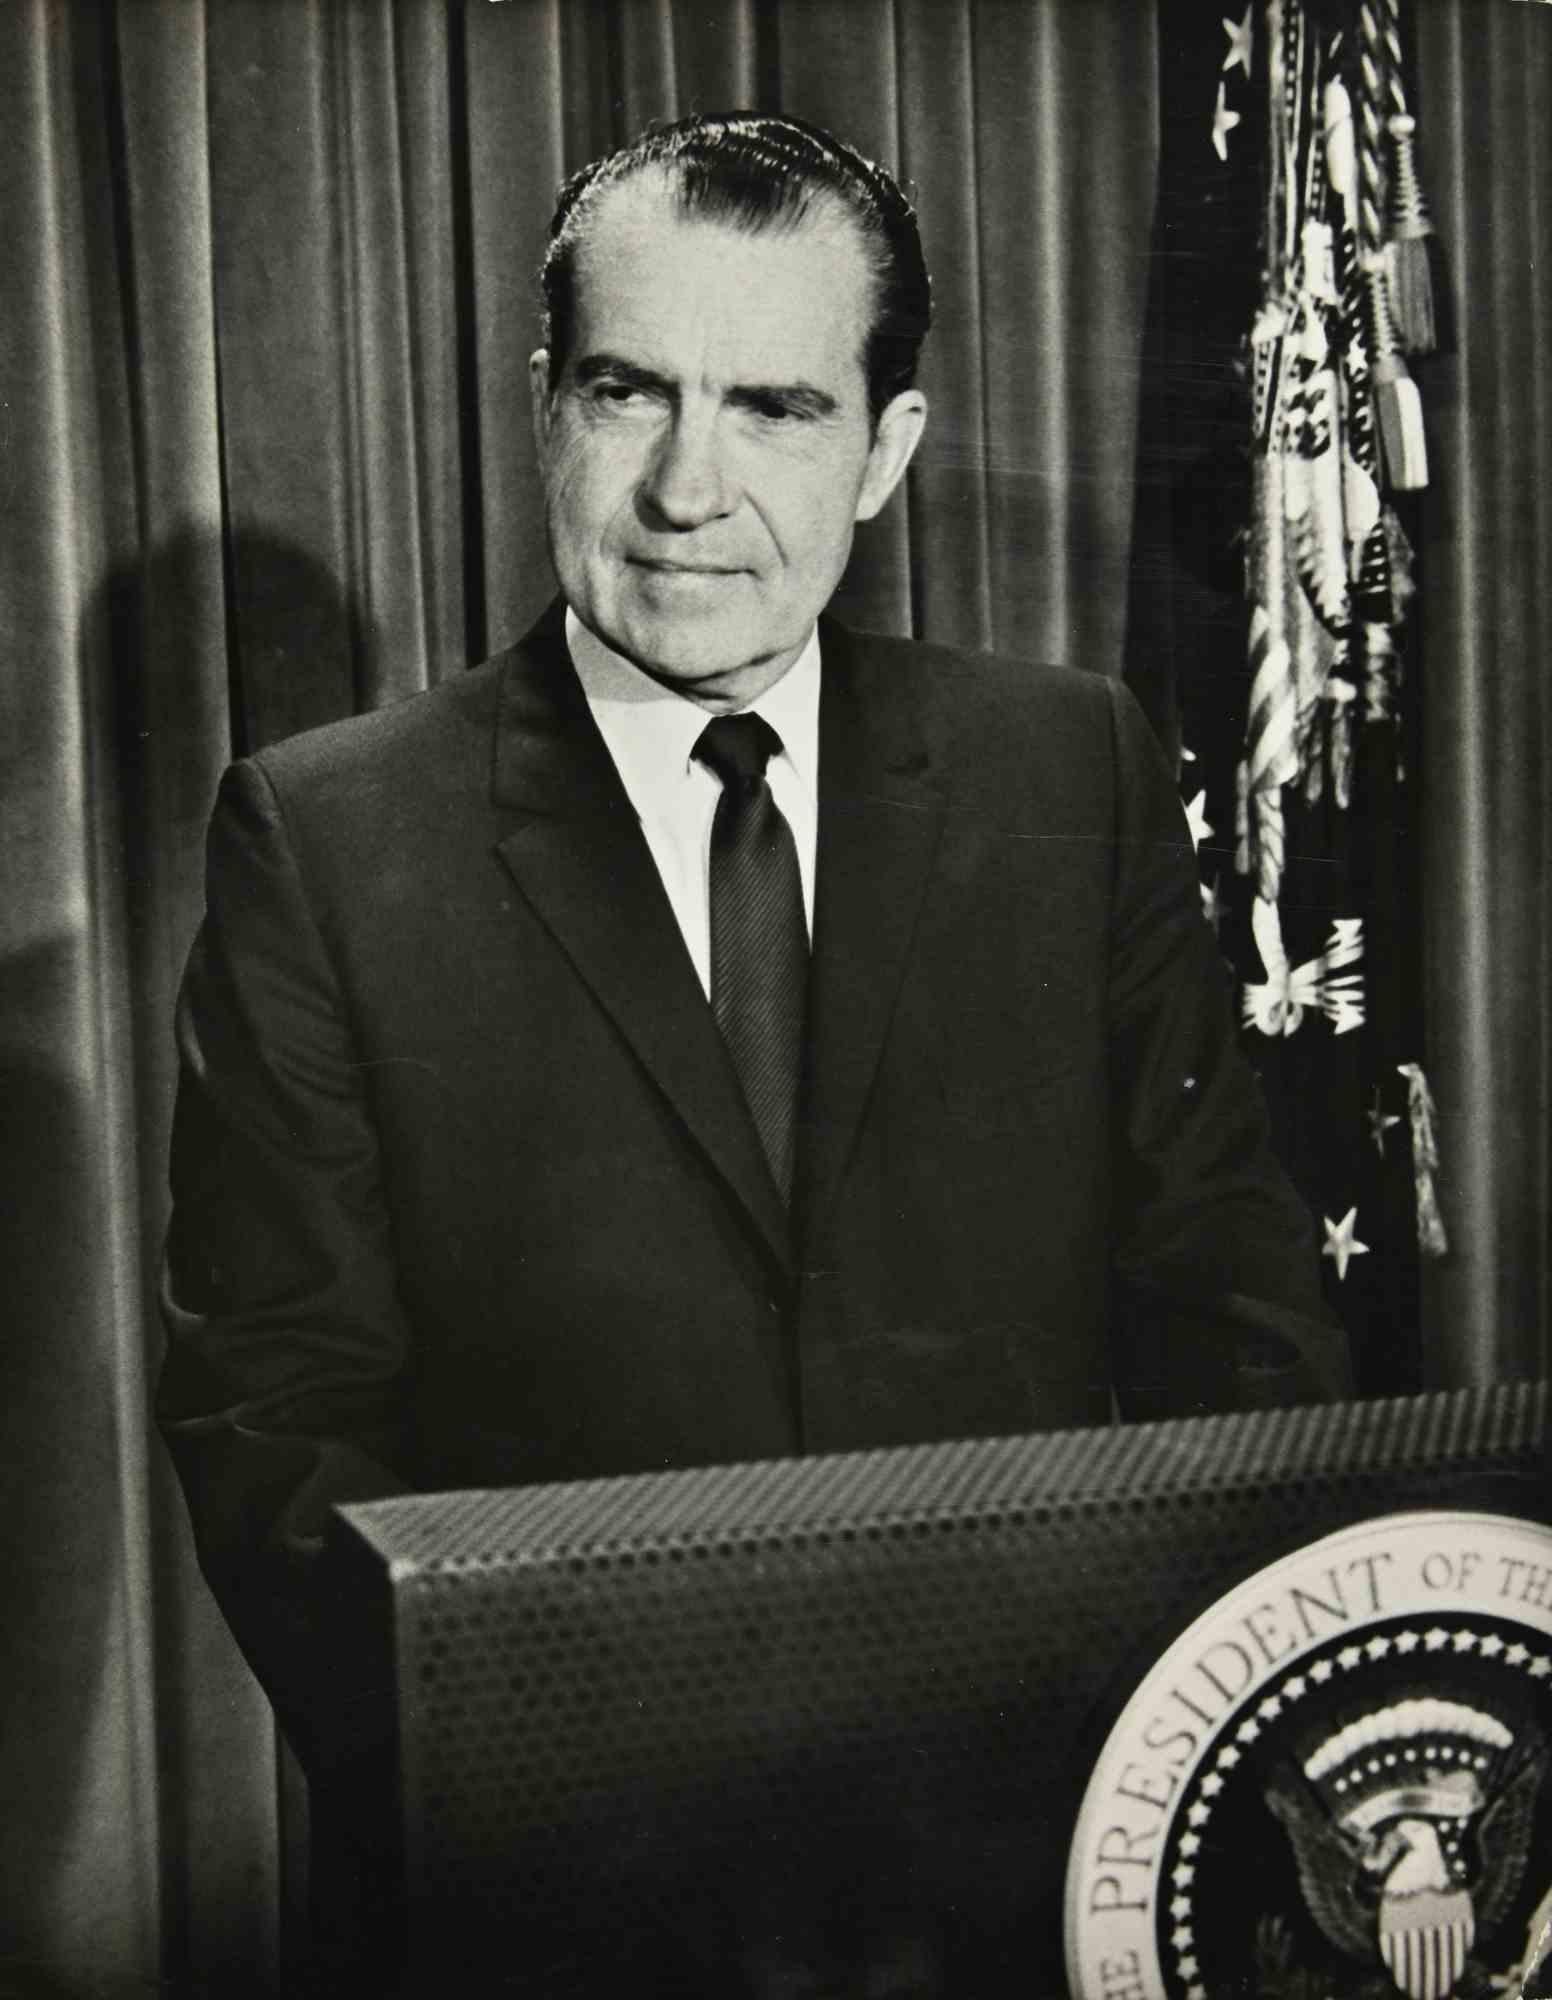 Black and White Photograph Unknown - Le président Richard Nixon - Photo vintage, années 1970